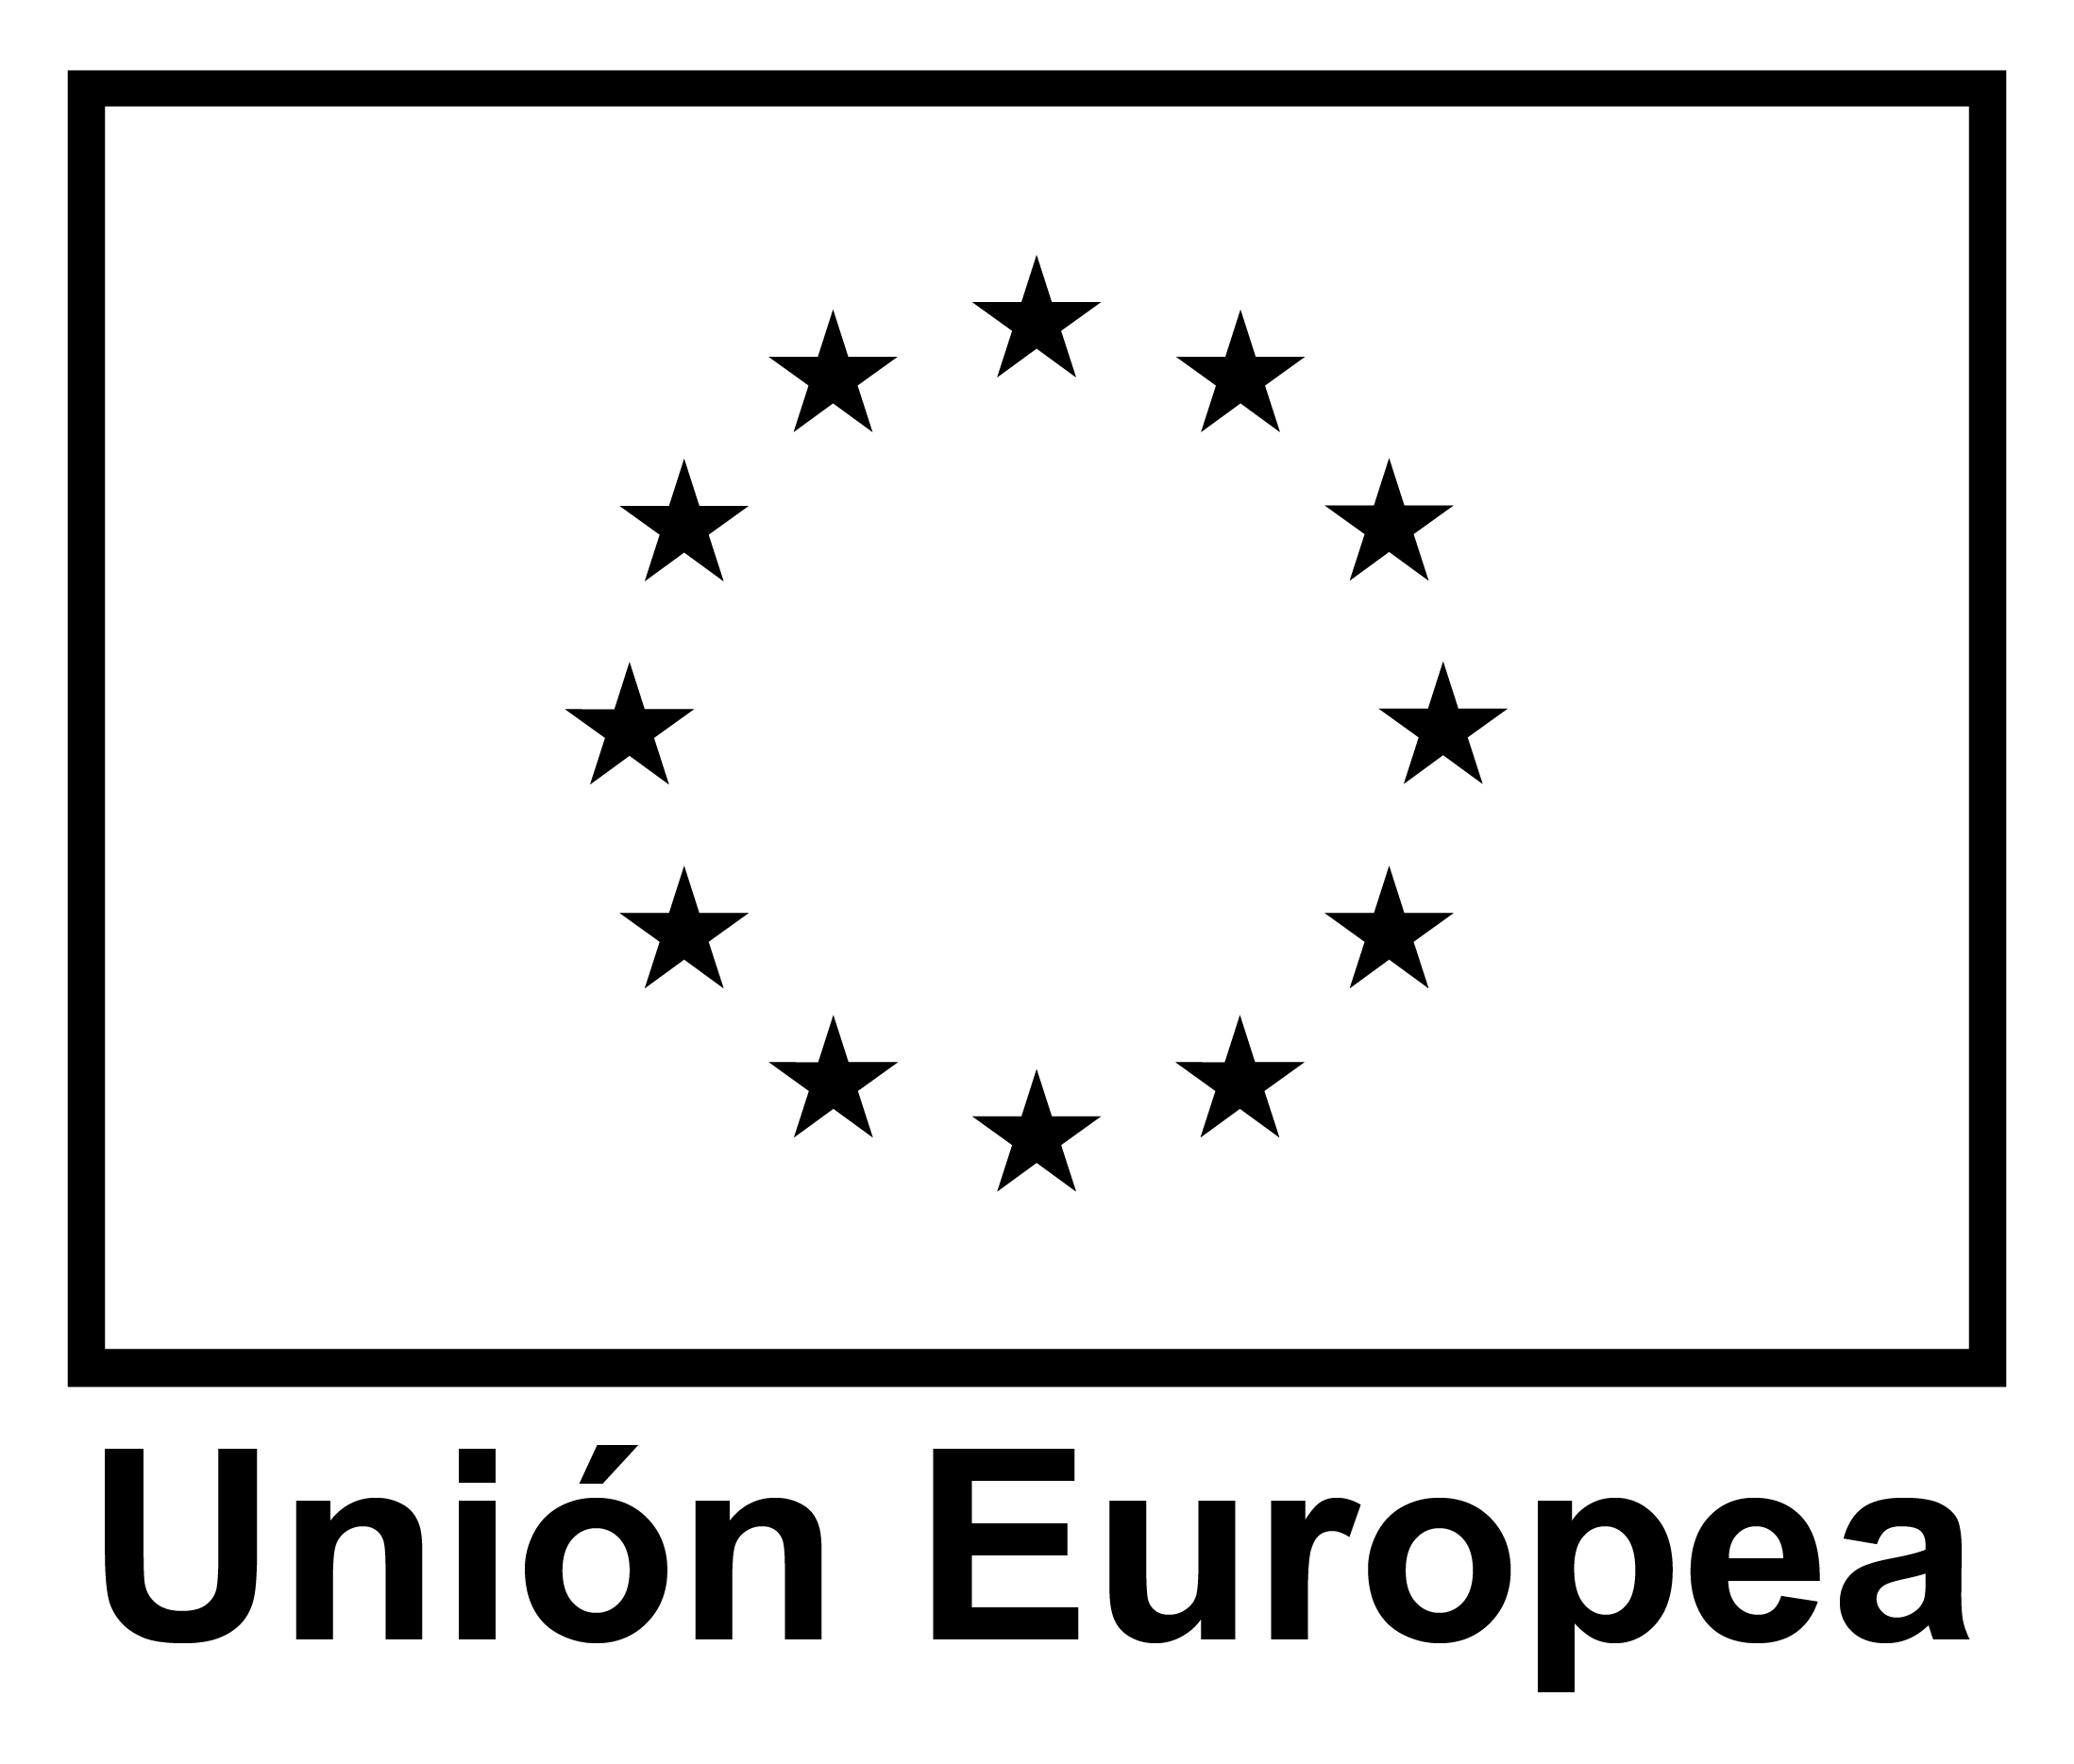 LOGO UNION EUROPEA 02